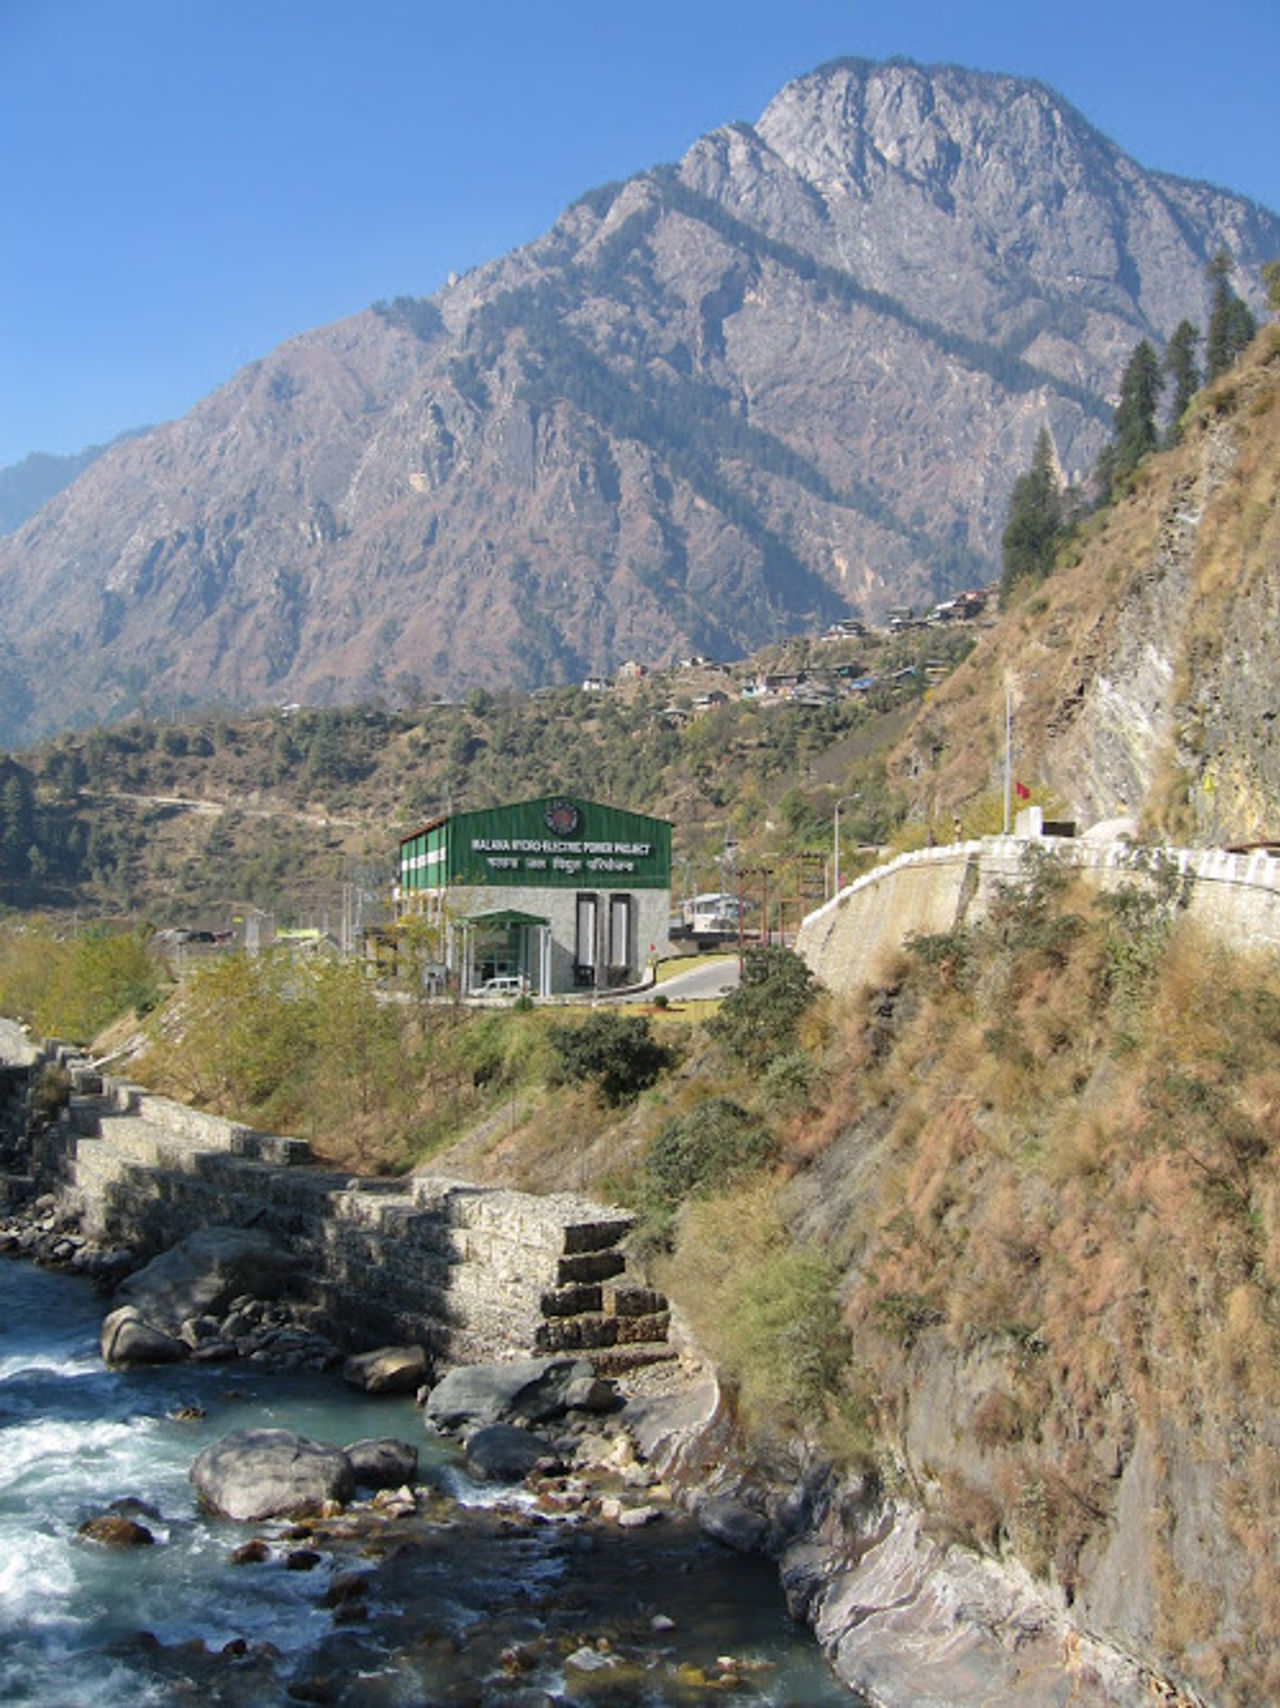 Malana and Parbati river